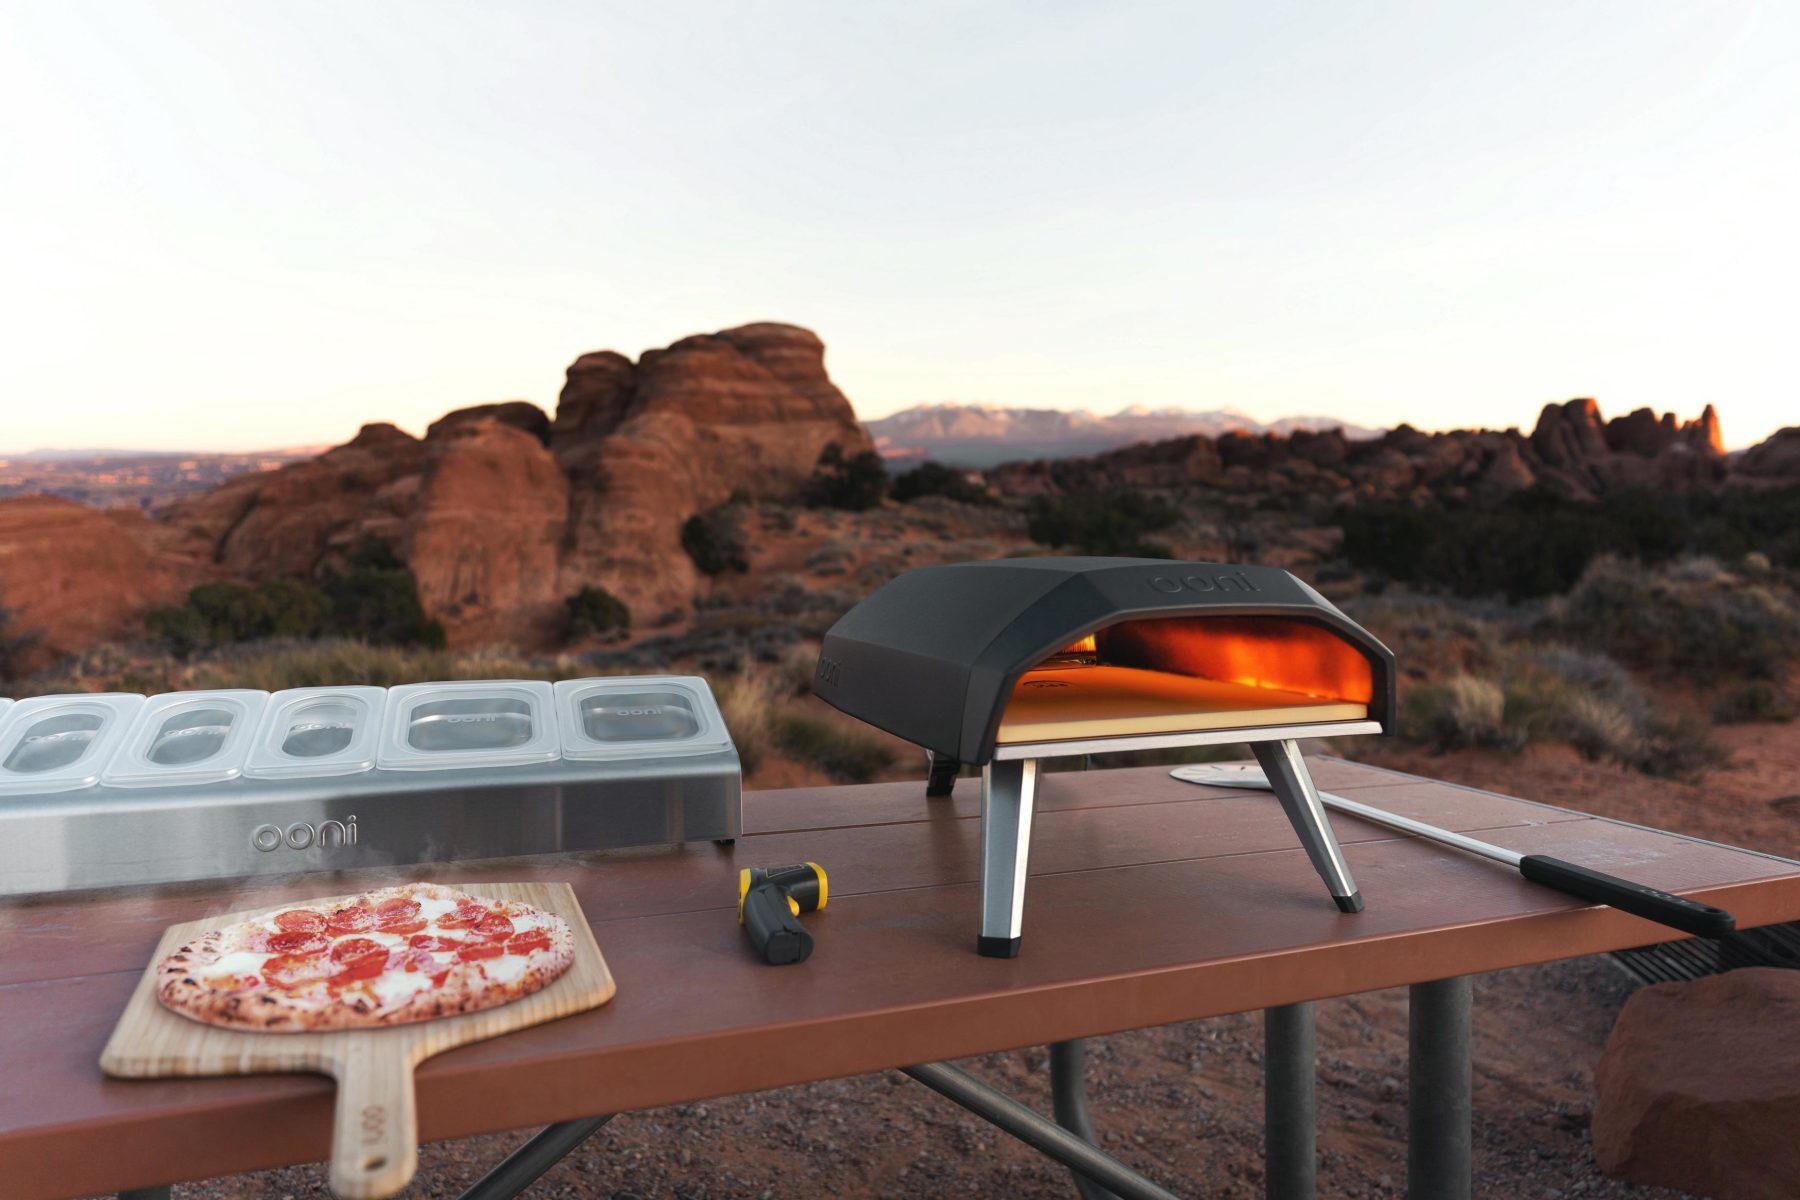 Ooni Koda 12, Gas-Powered Pizza Oven